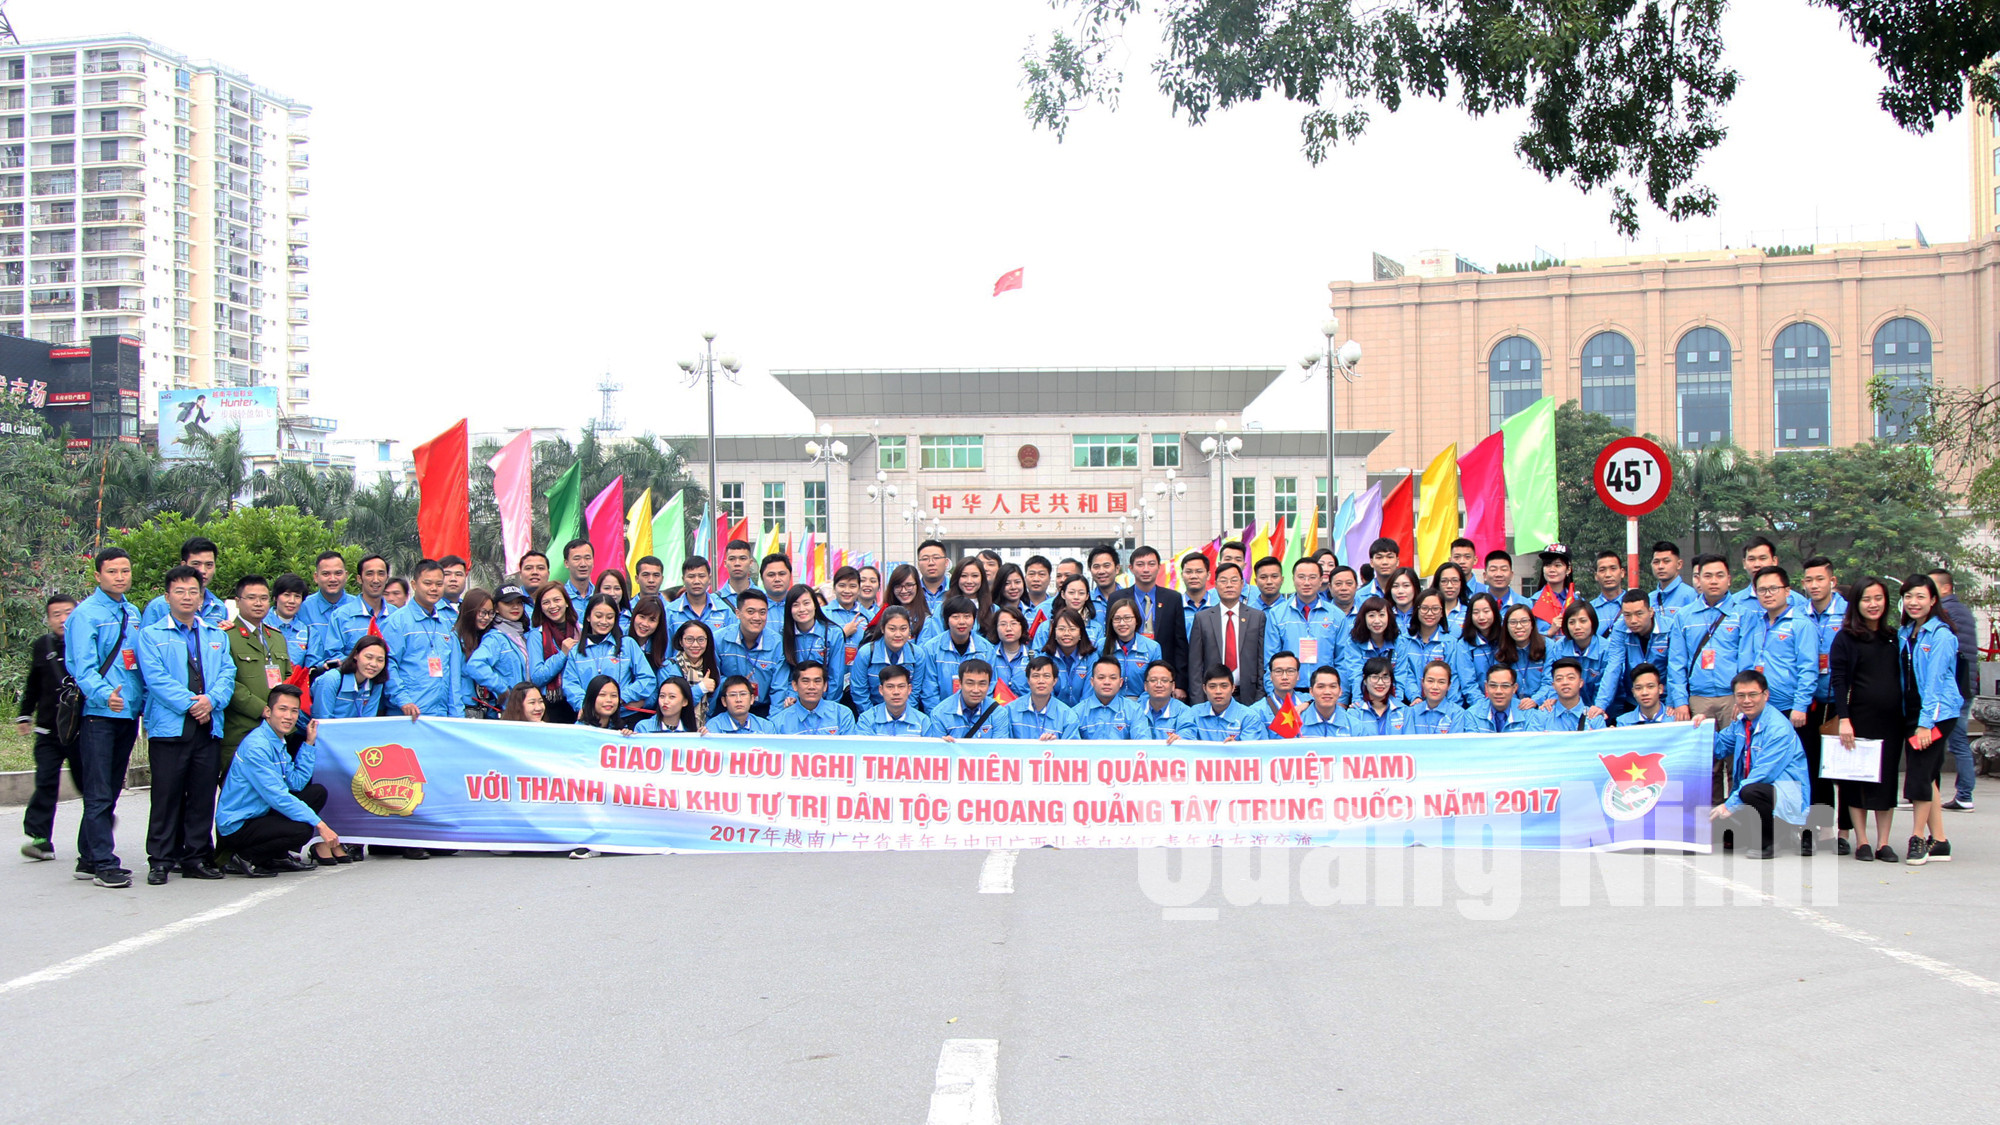 Đoàn đại biểu thanh niên tỉnh Quảng Ninh tham gia chương trình giao lưu hữu nghị thanh niên tỉnh Quảng Ninh - Quảng Tây lần thứ II, năm 2017.